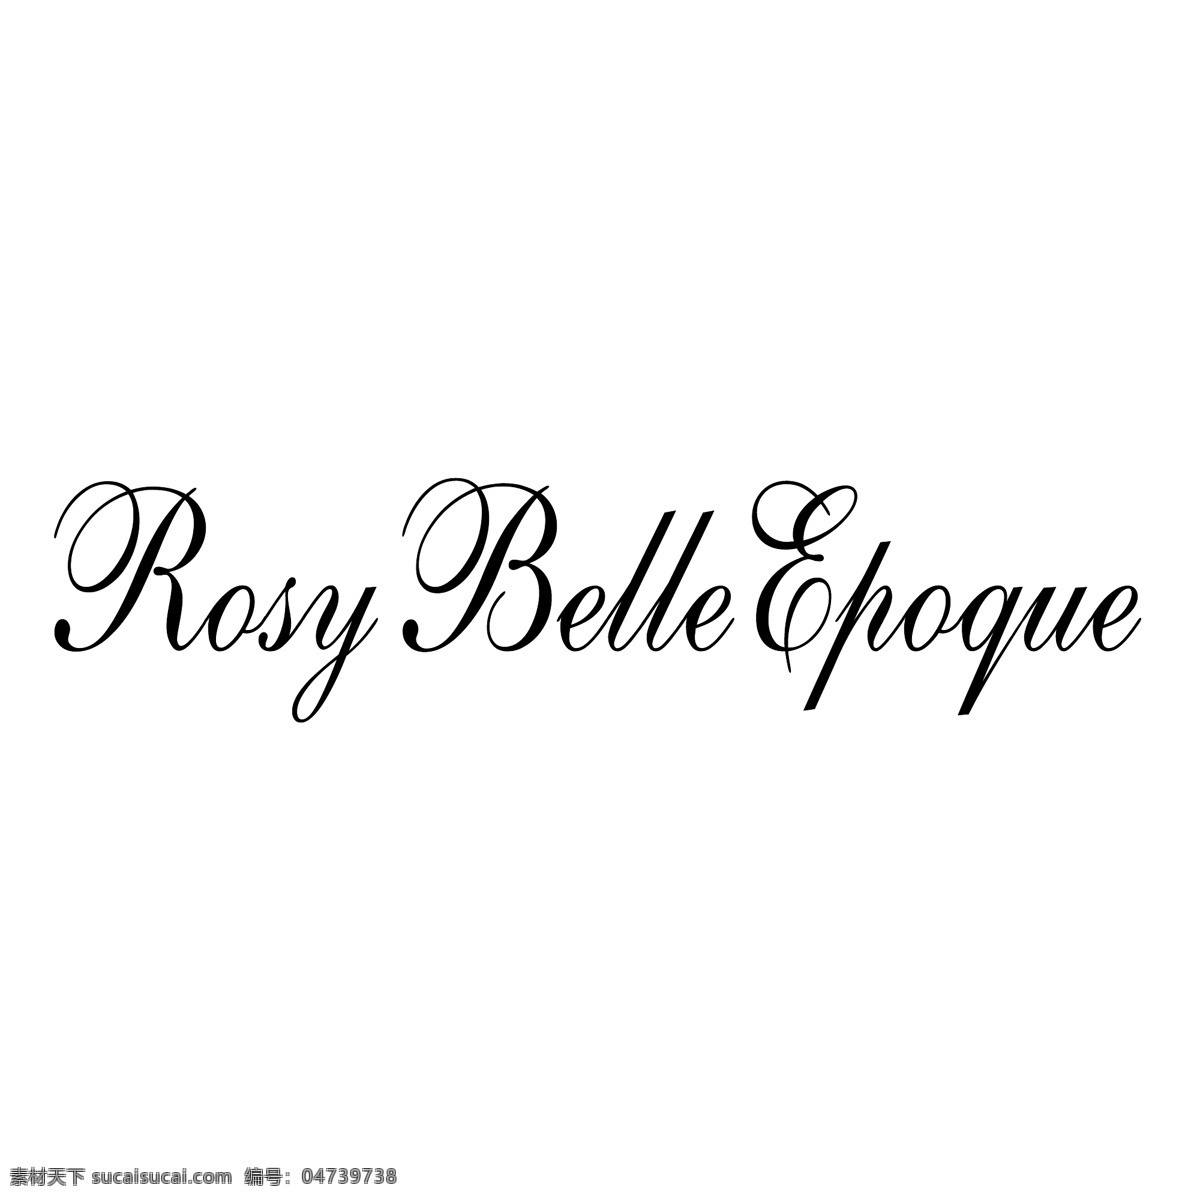 红润 好 时代 自由 美好 belle epoque 标识 玫瑰 psd源文件 logo设计